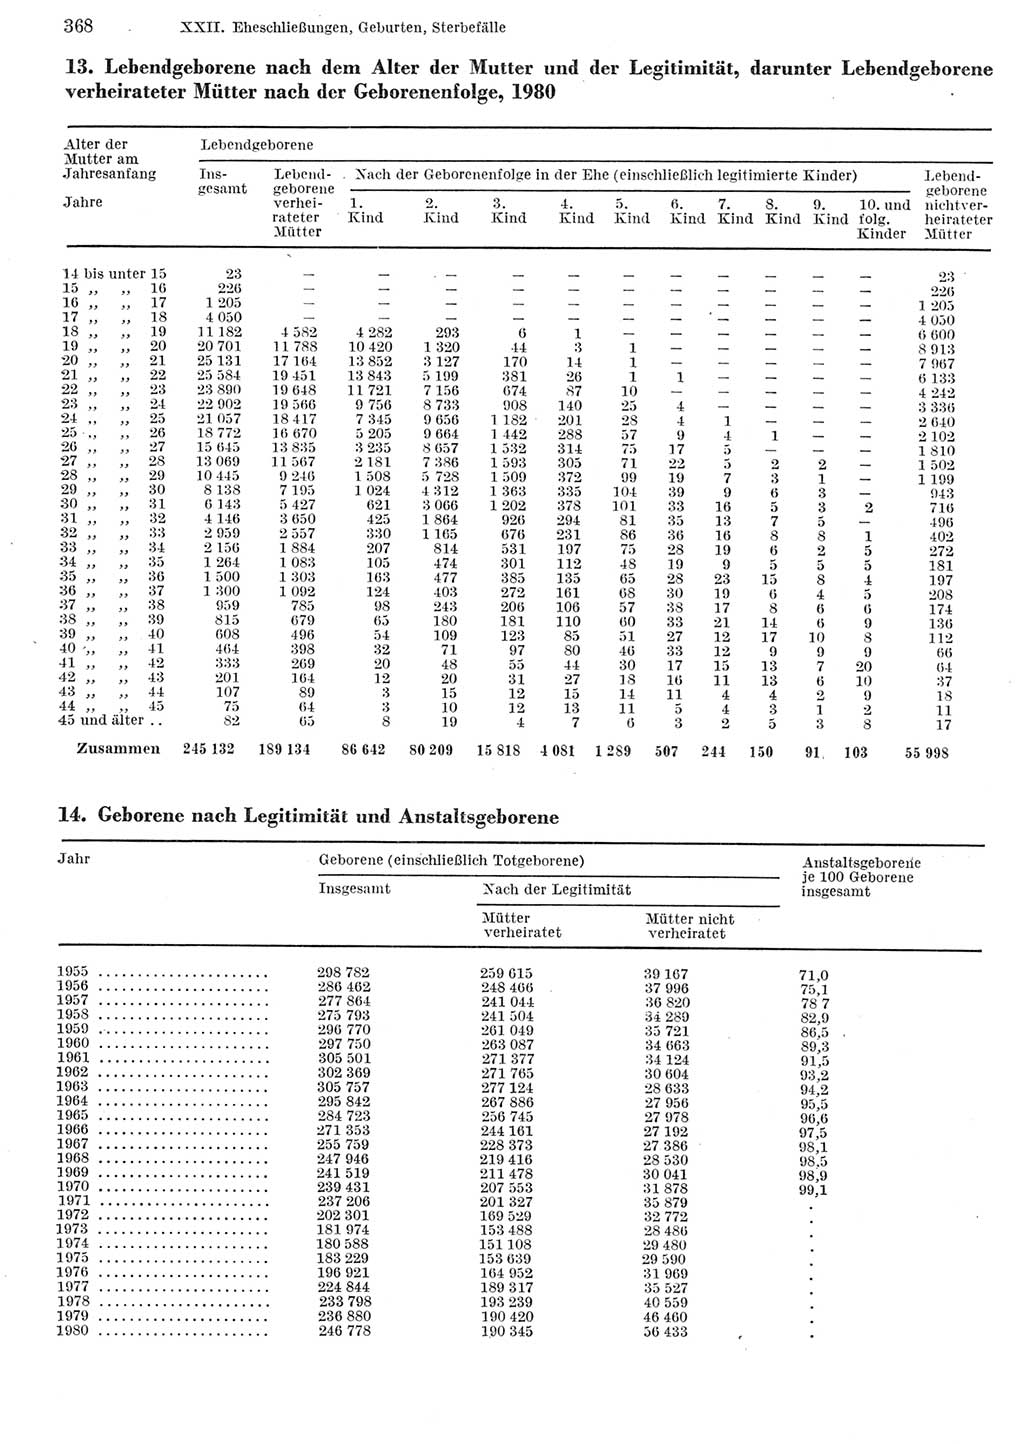 Statistisches Jahrbuch der Deutschen Demokratischen Republik (DDR) 1982, Seite 368 (Stat. Jb. DDR 1982, S. 368)